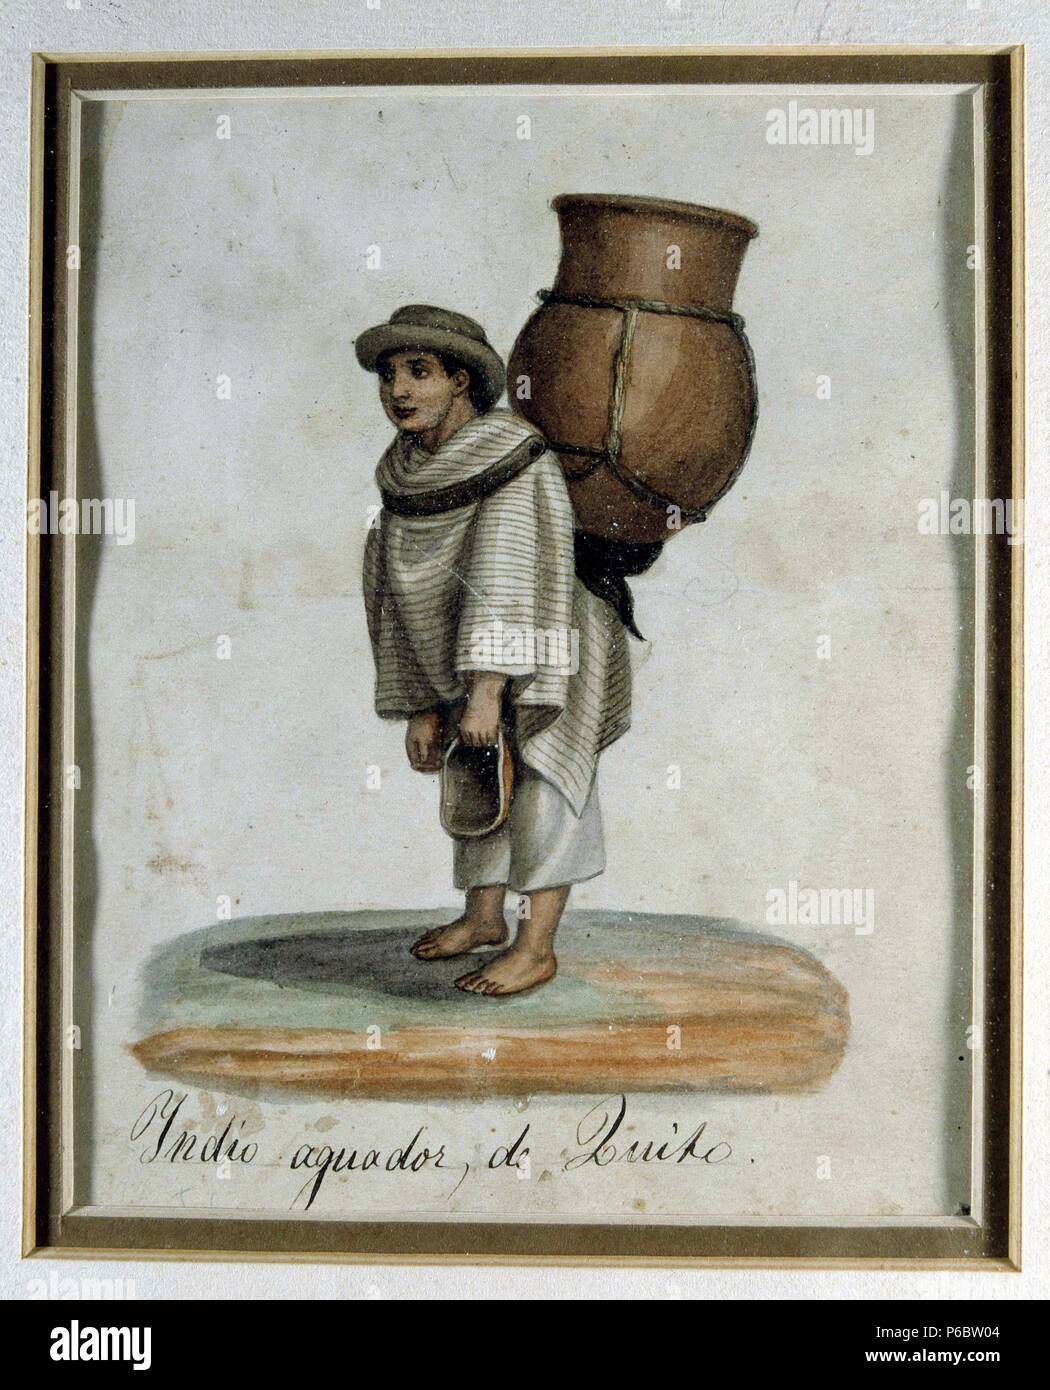 SALAS , RAMON. PINTOR ECUATORIANO. 1815 - 1880. ' INDIO AGUADOR DE QUITO ' , ACUARELA. MUSEO ARTE MODERNO. QUITO. Stock Photo